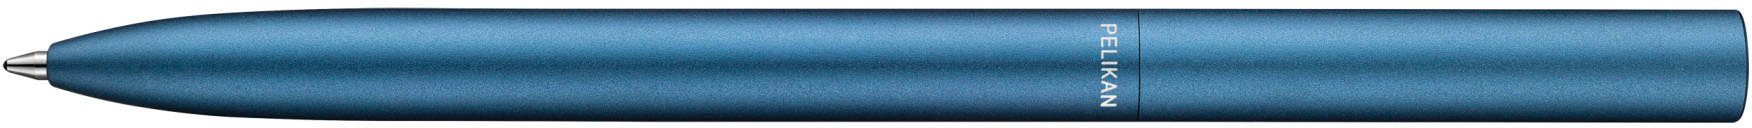 Drehkugelschreiber blue K6 ocean Ineo®, Pelikan